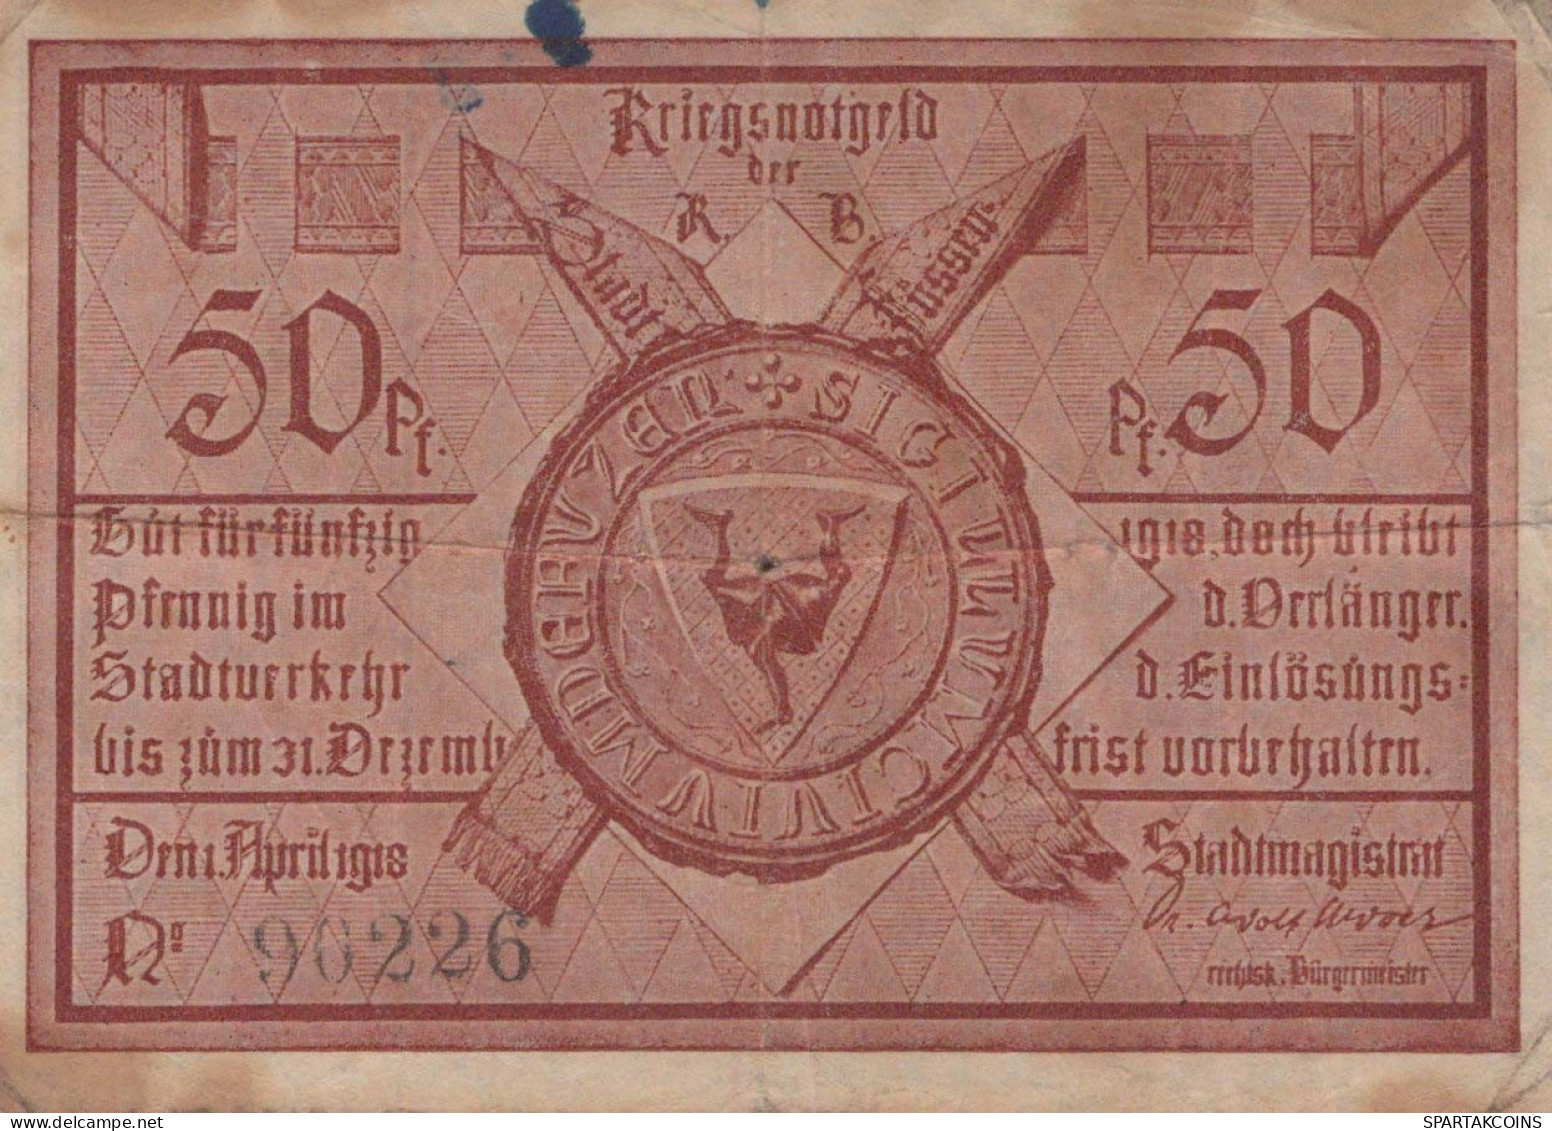 50 PFENNIG 1918 Stadt FÜSSEN Bavaria DEUTSCHLAND Notgeld Banknote #PD443 - [11] Local Banknote Issues